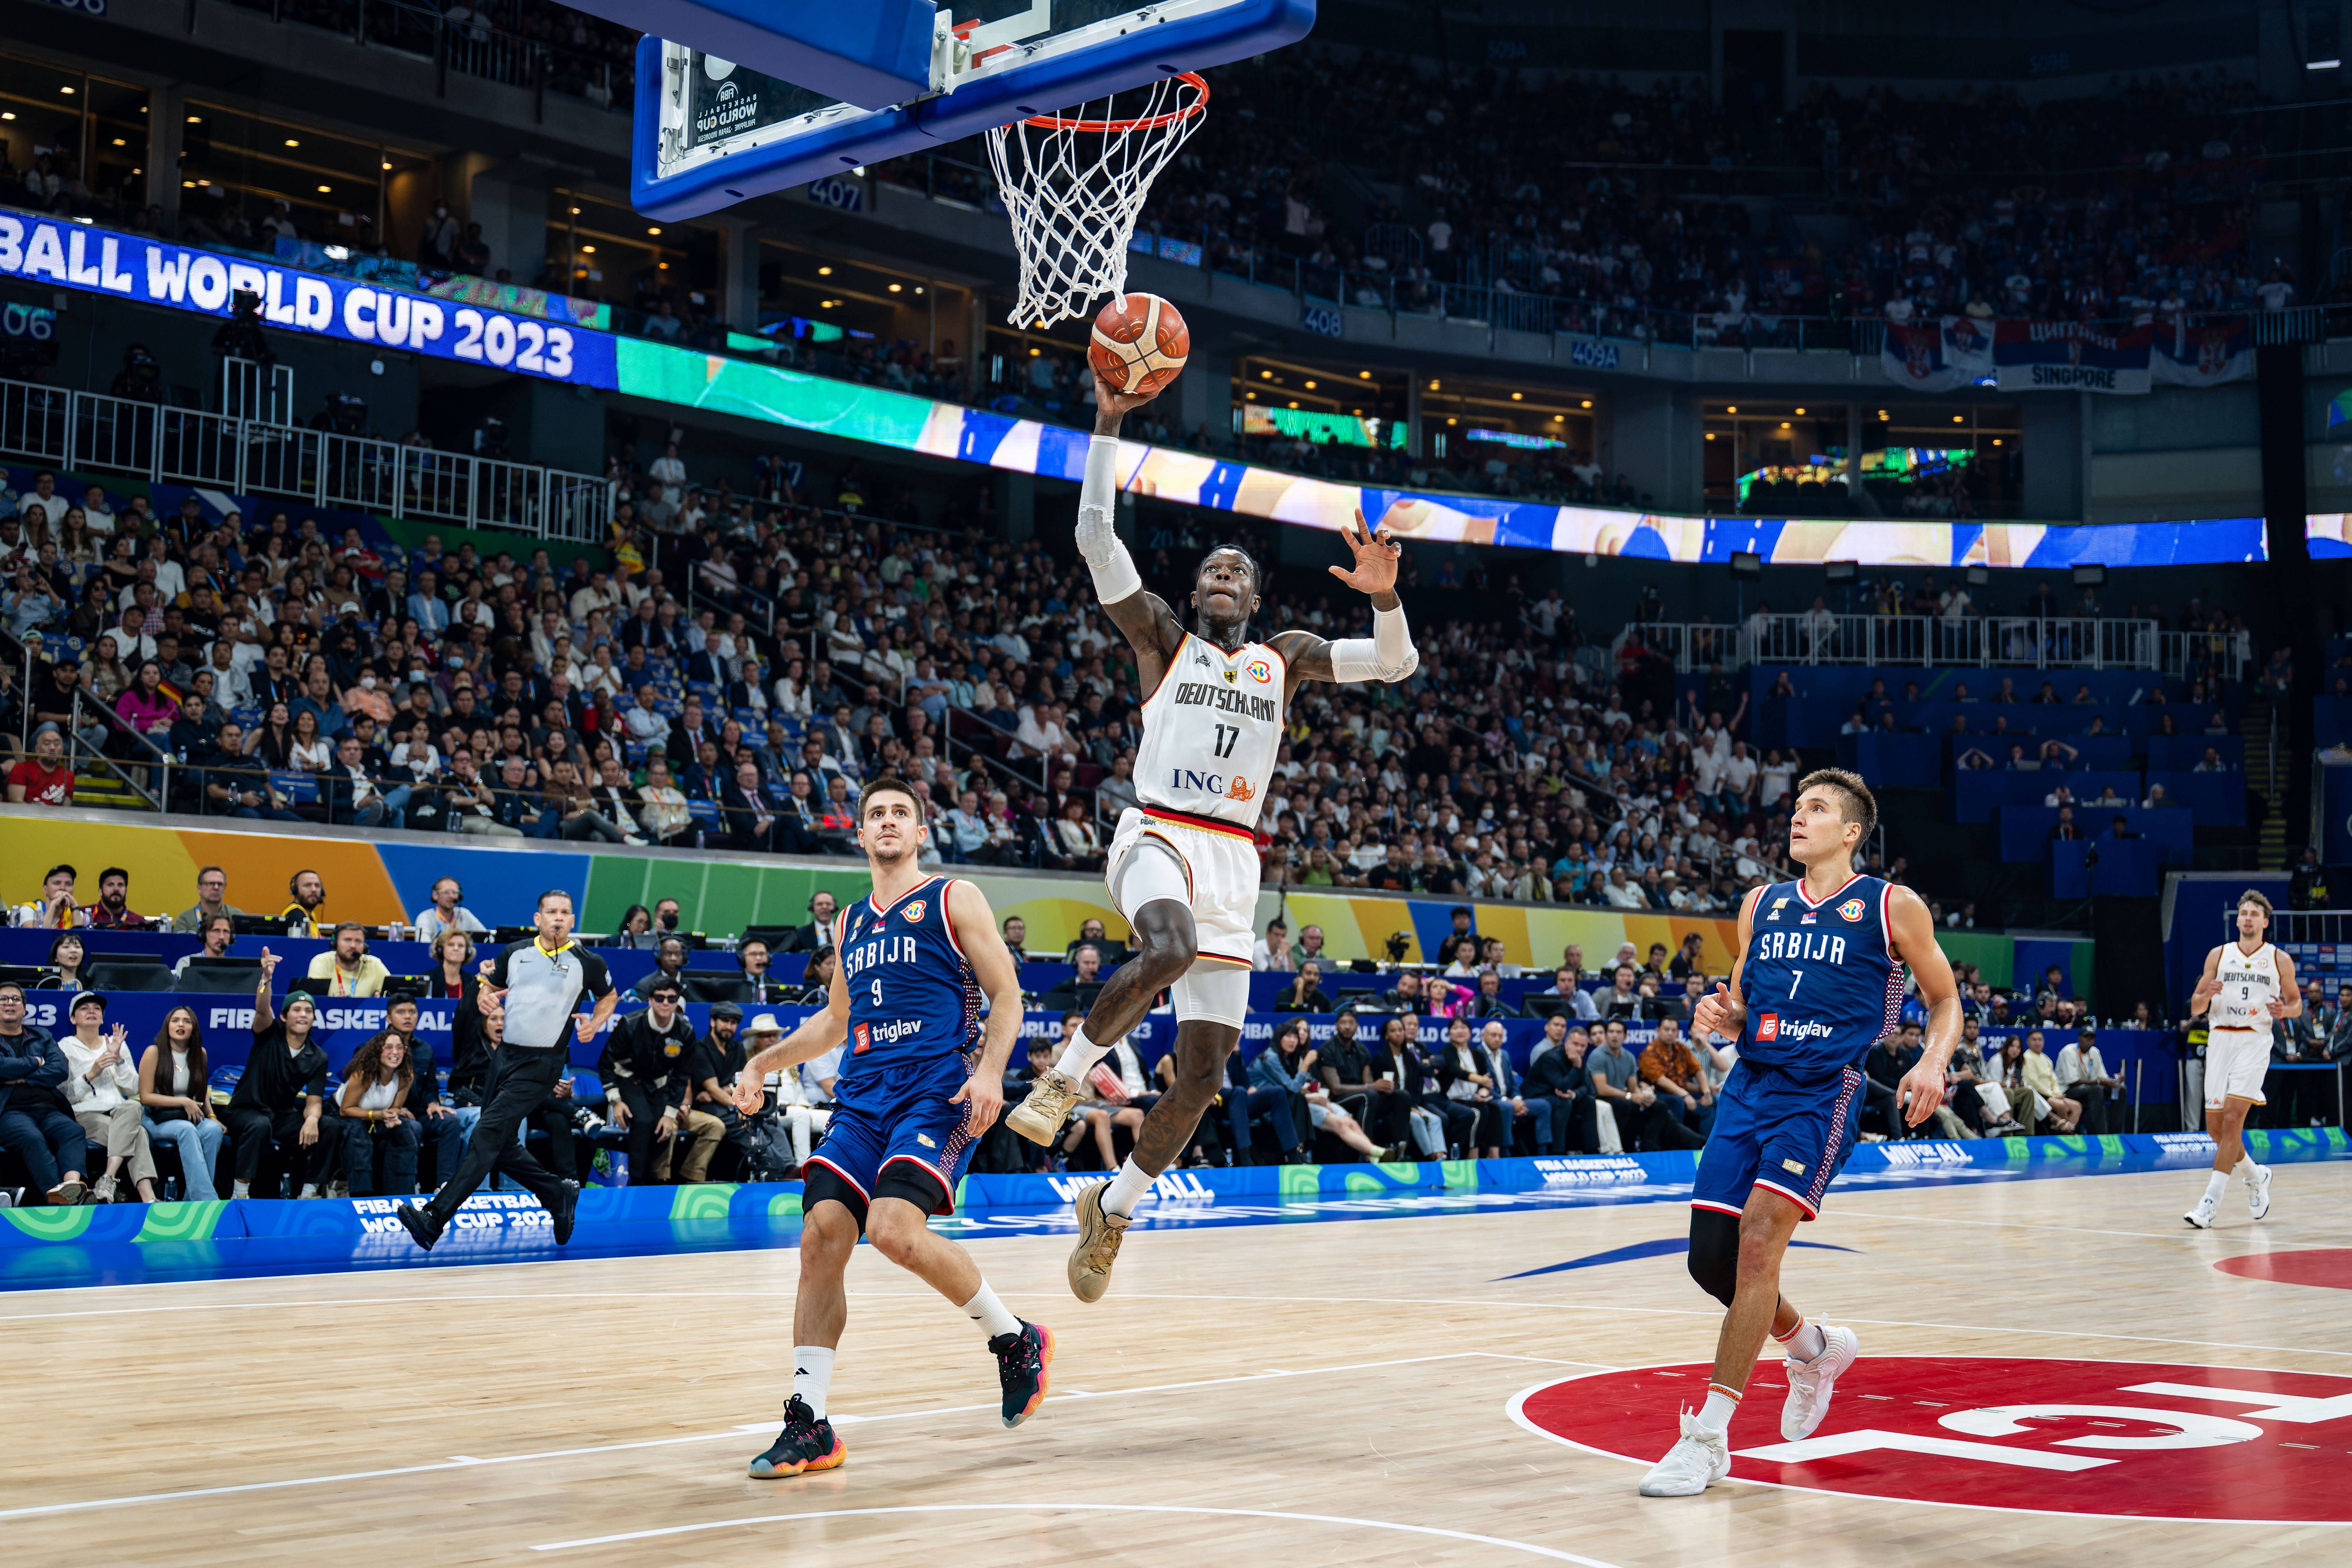 Alemanha sagra-se campeã mundial de basquetebol pela primeira vez